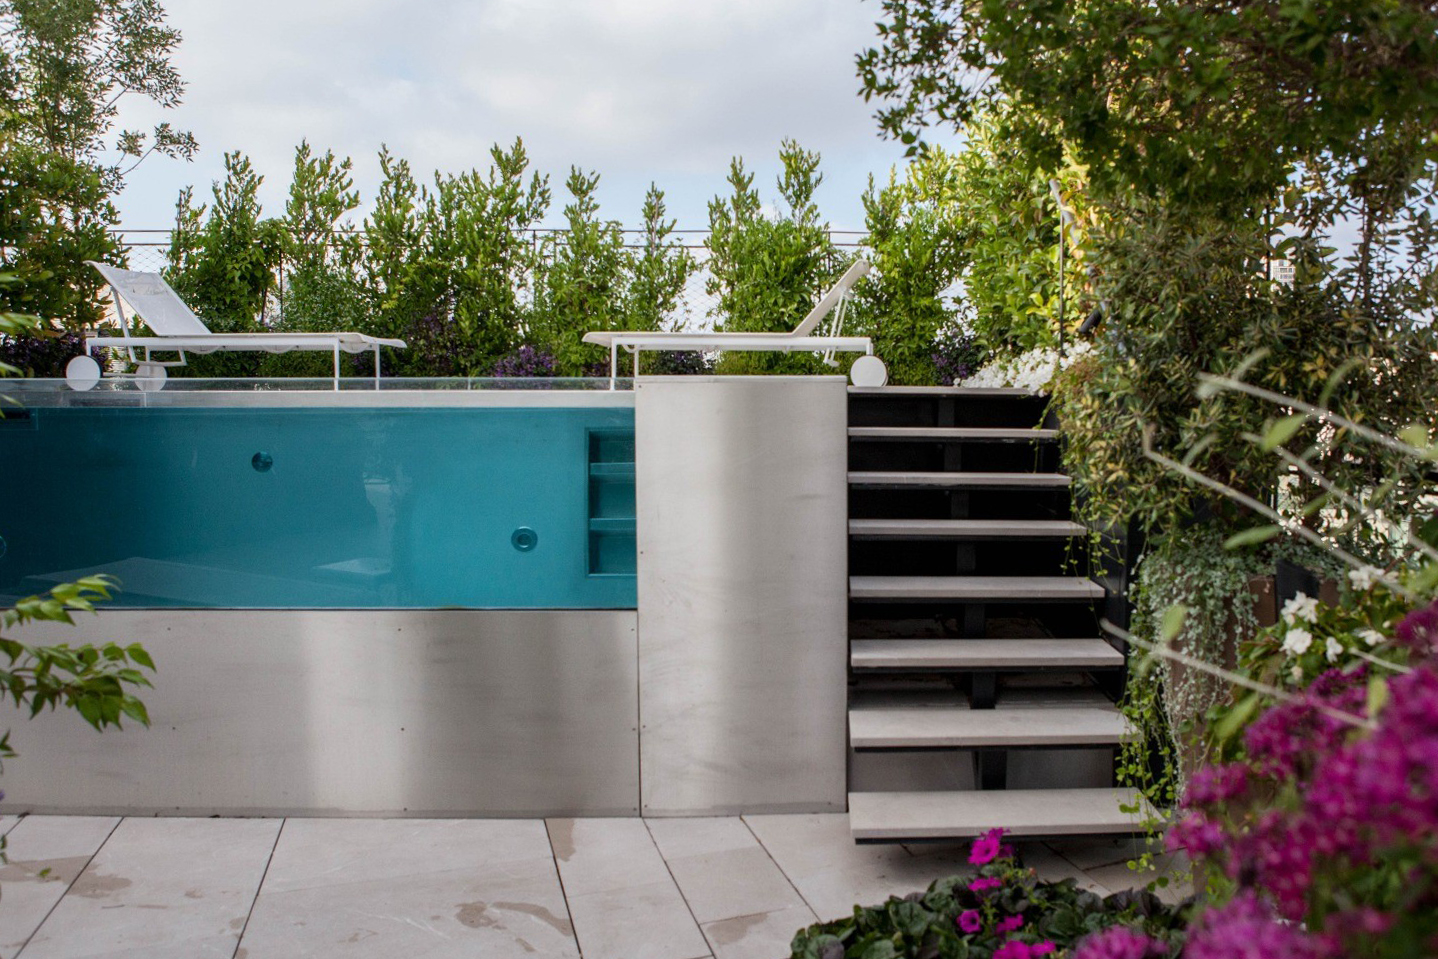 Prajete si skutočne luxusný bazén? Zvoľte infinity pool s presklenou stenou